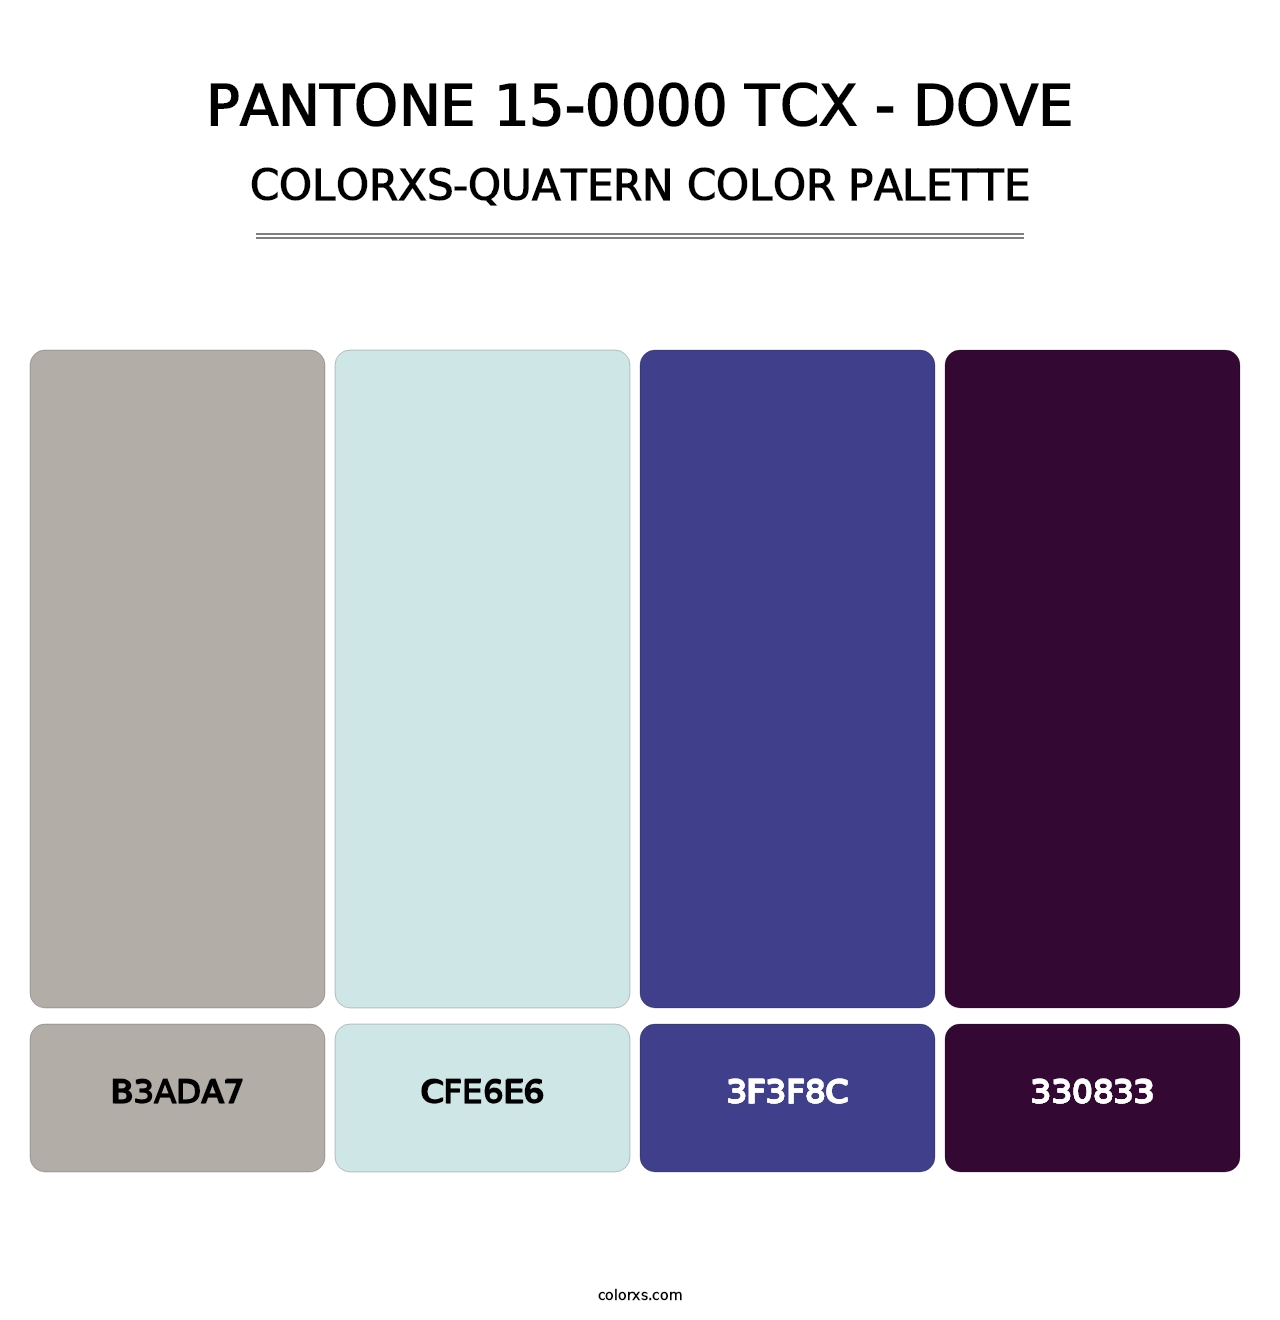 PANTONE 15-0000 TCX - Dove - Colorxs Quatern Palette